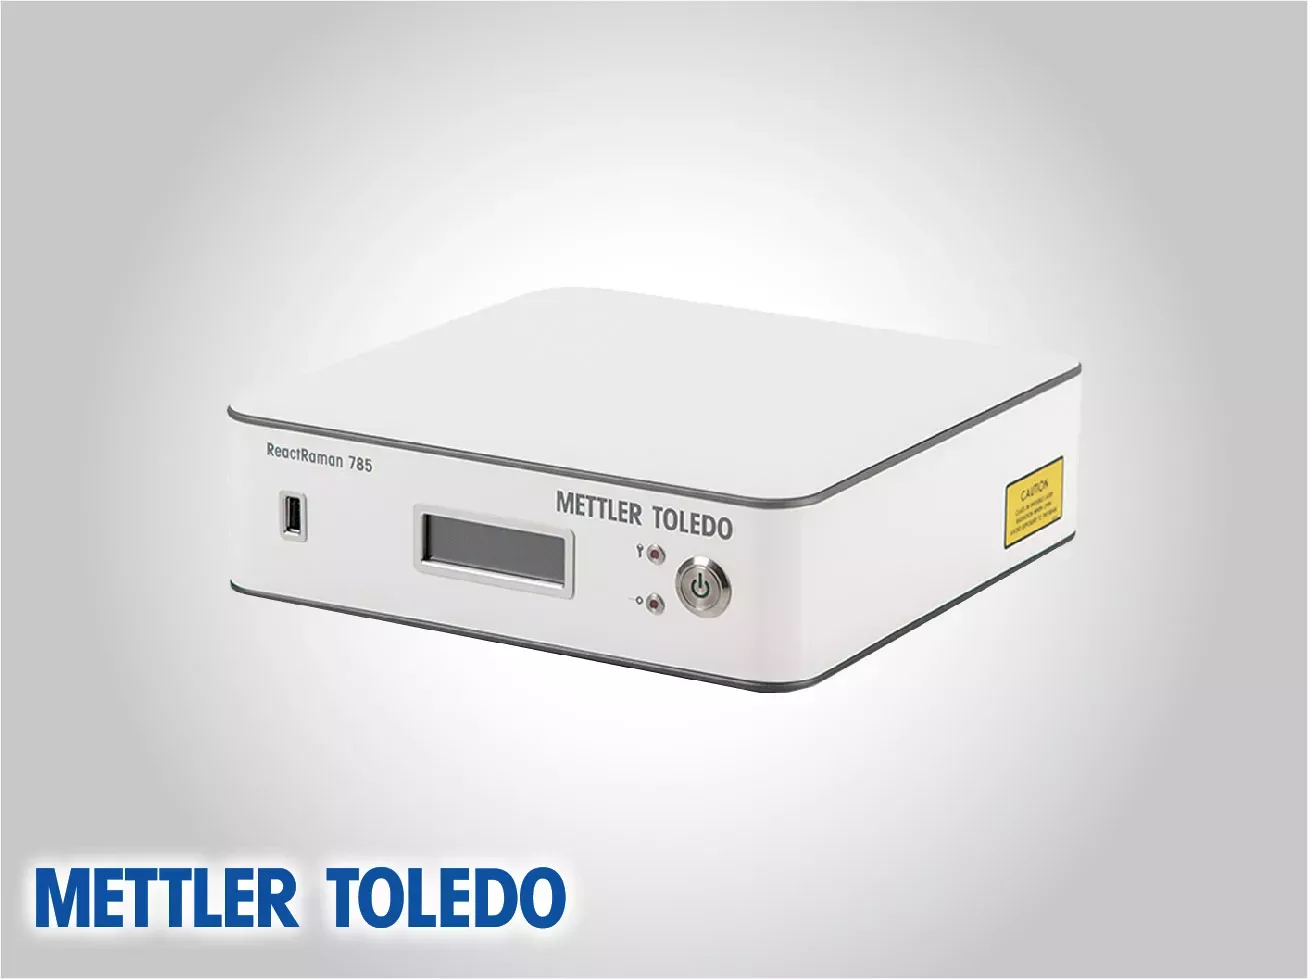 Mettler Toledo Raman Spectrometers